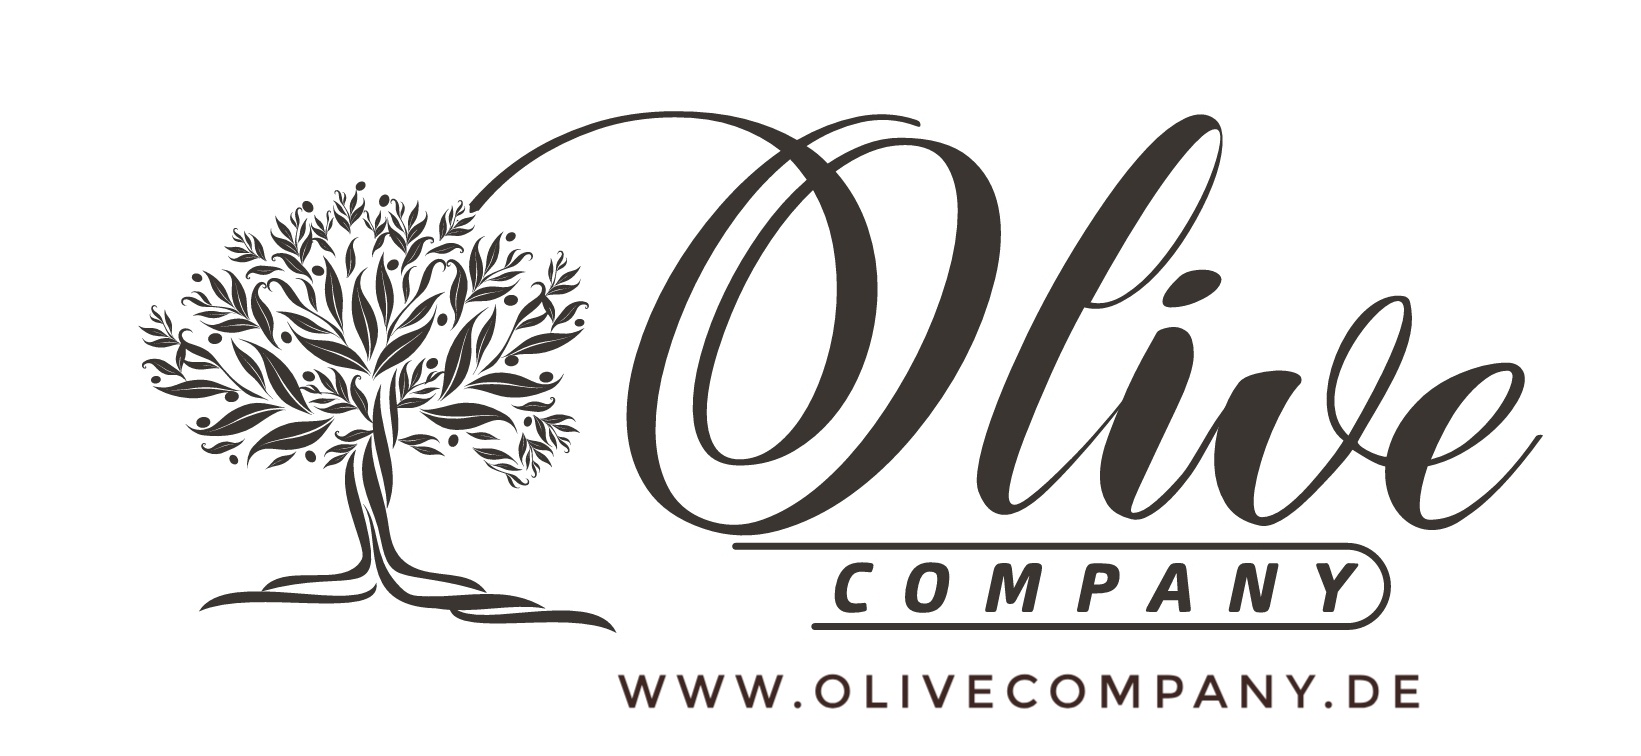 Olivecompany Logo